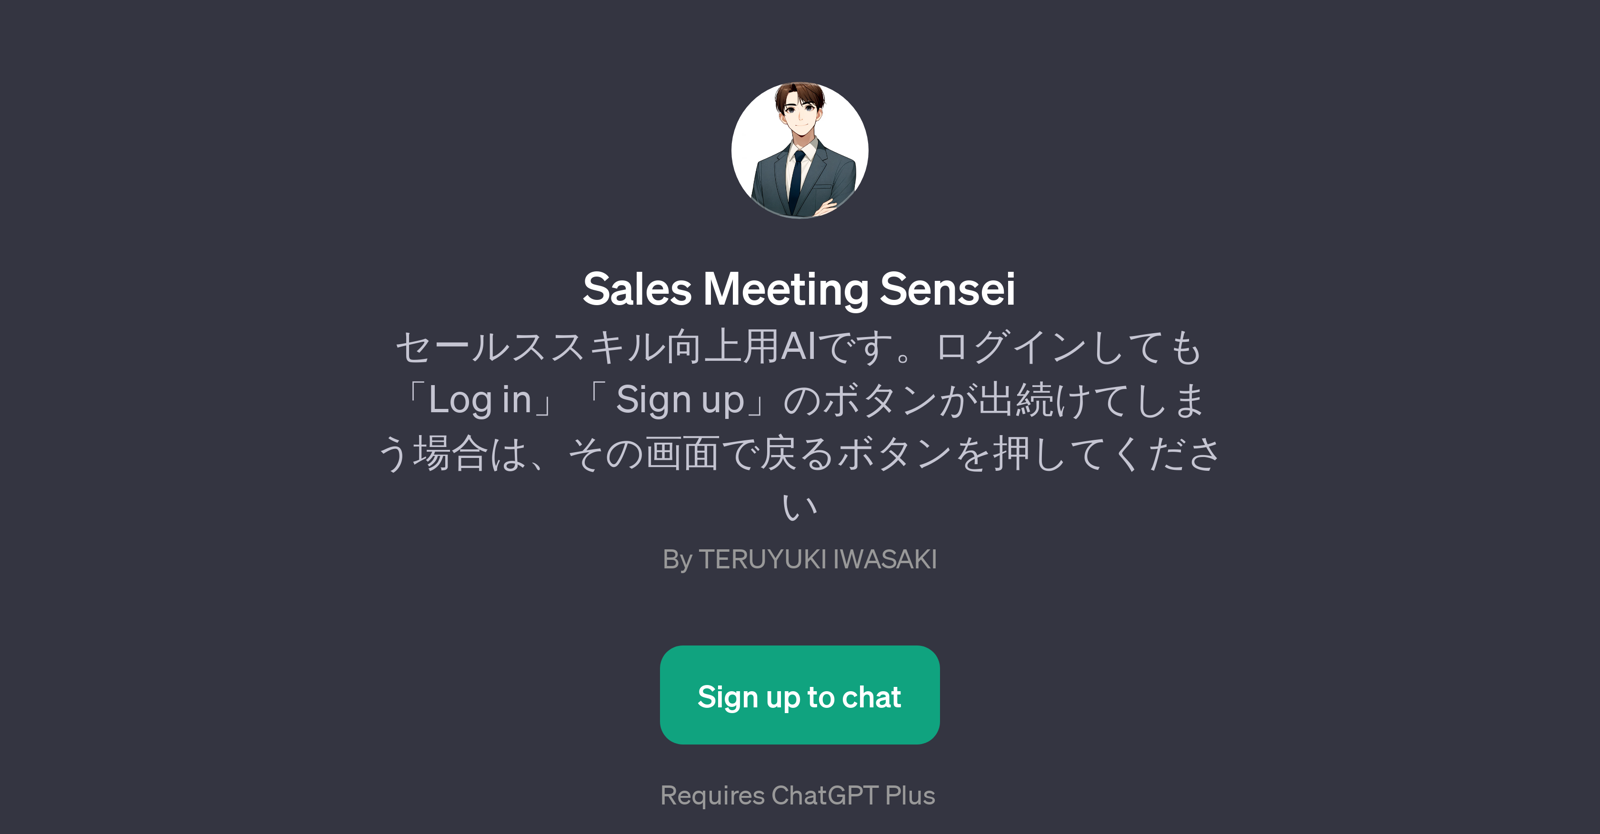 Sales Meeting Sensei website